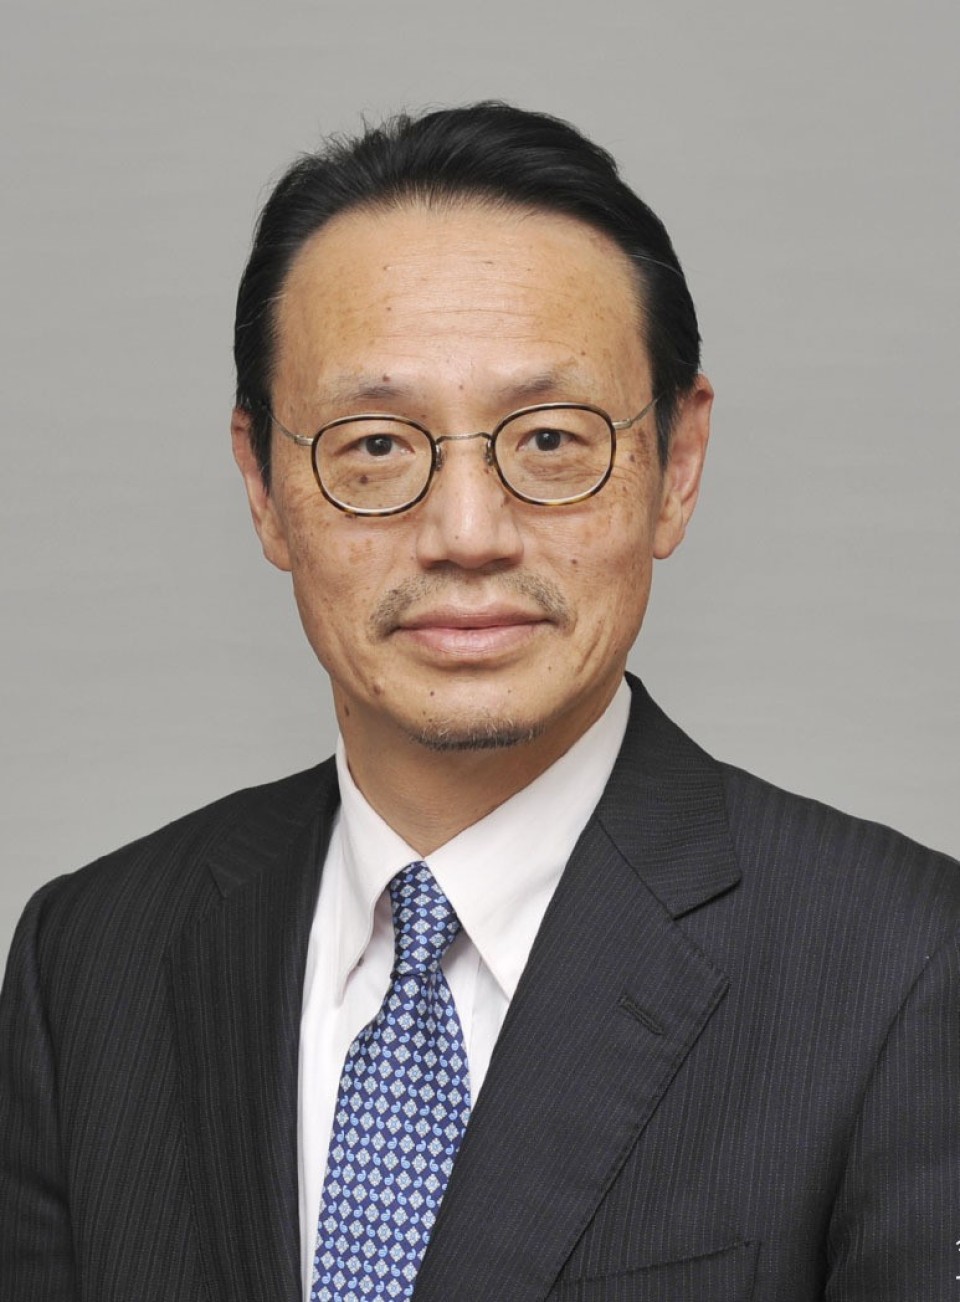 Nhật Bản sắp bổ nhiệm đại sứ mới tại Trung Quốc